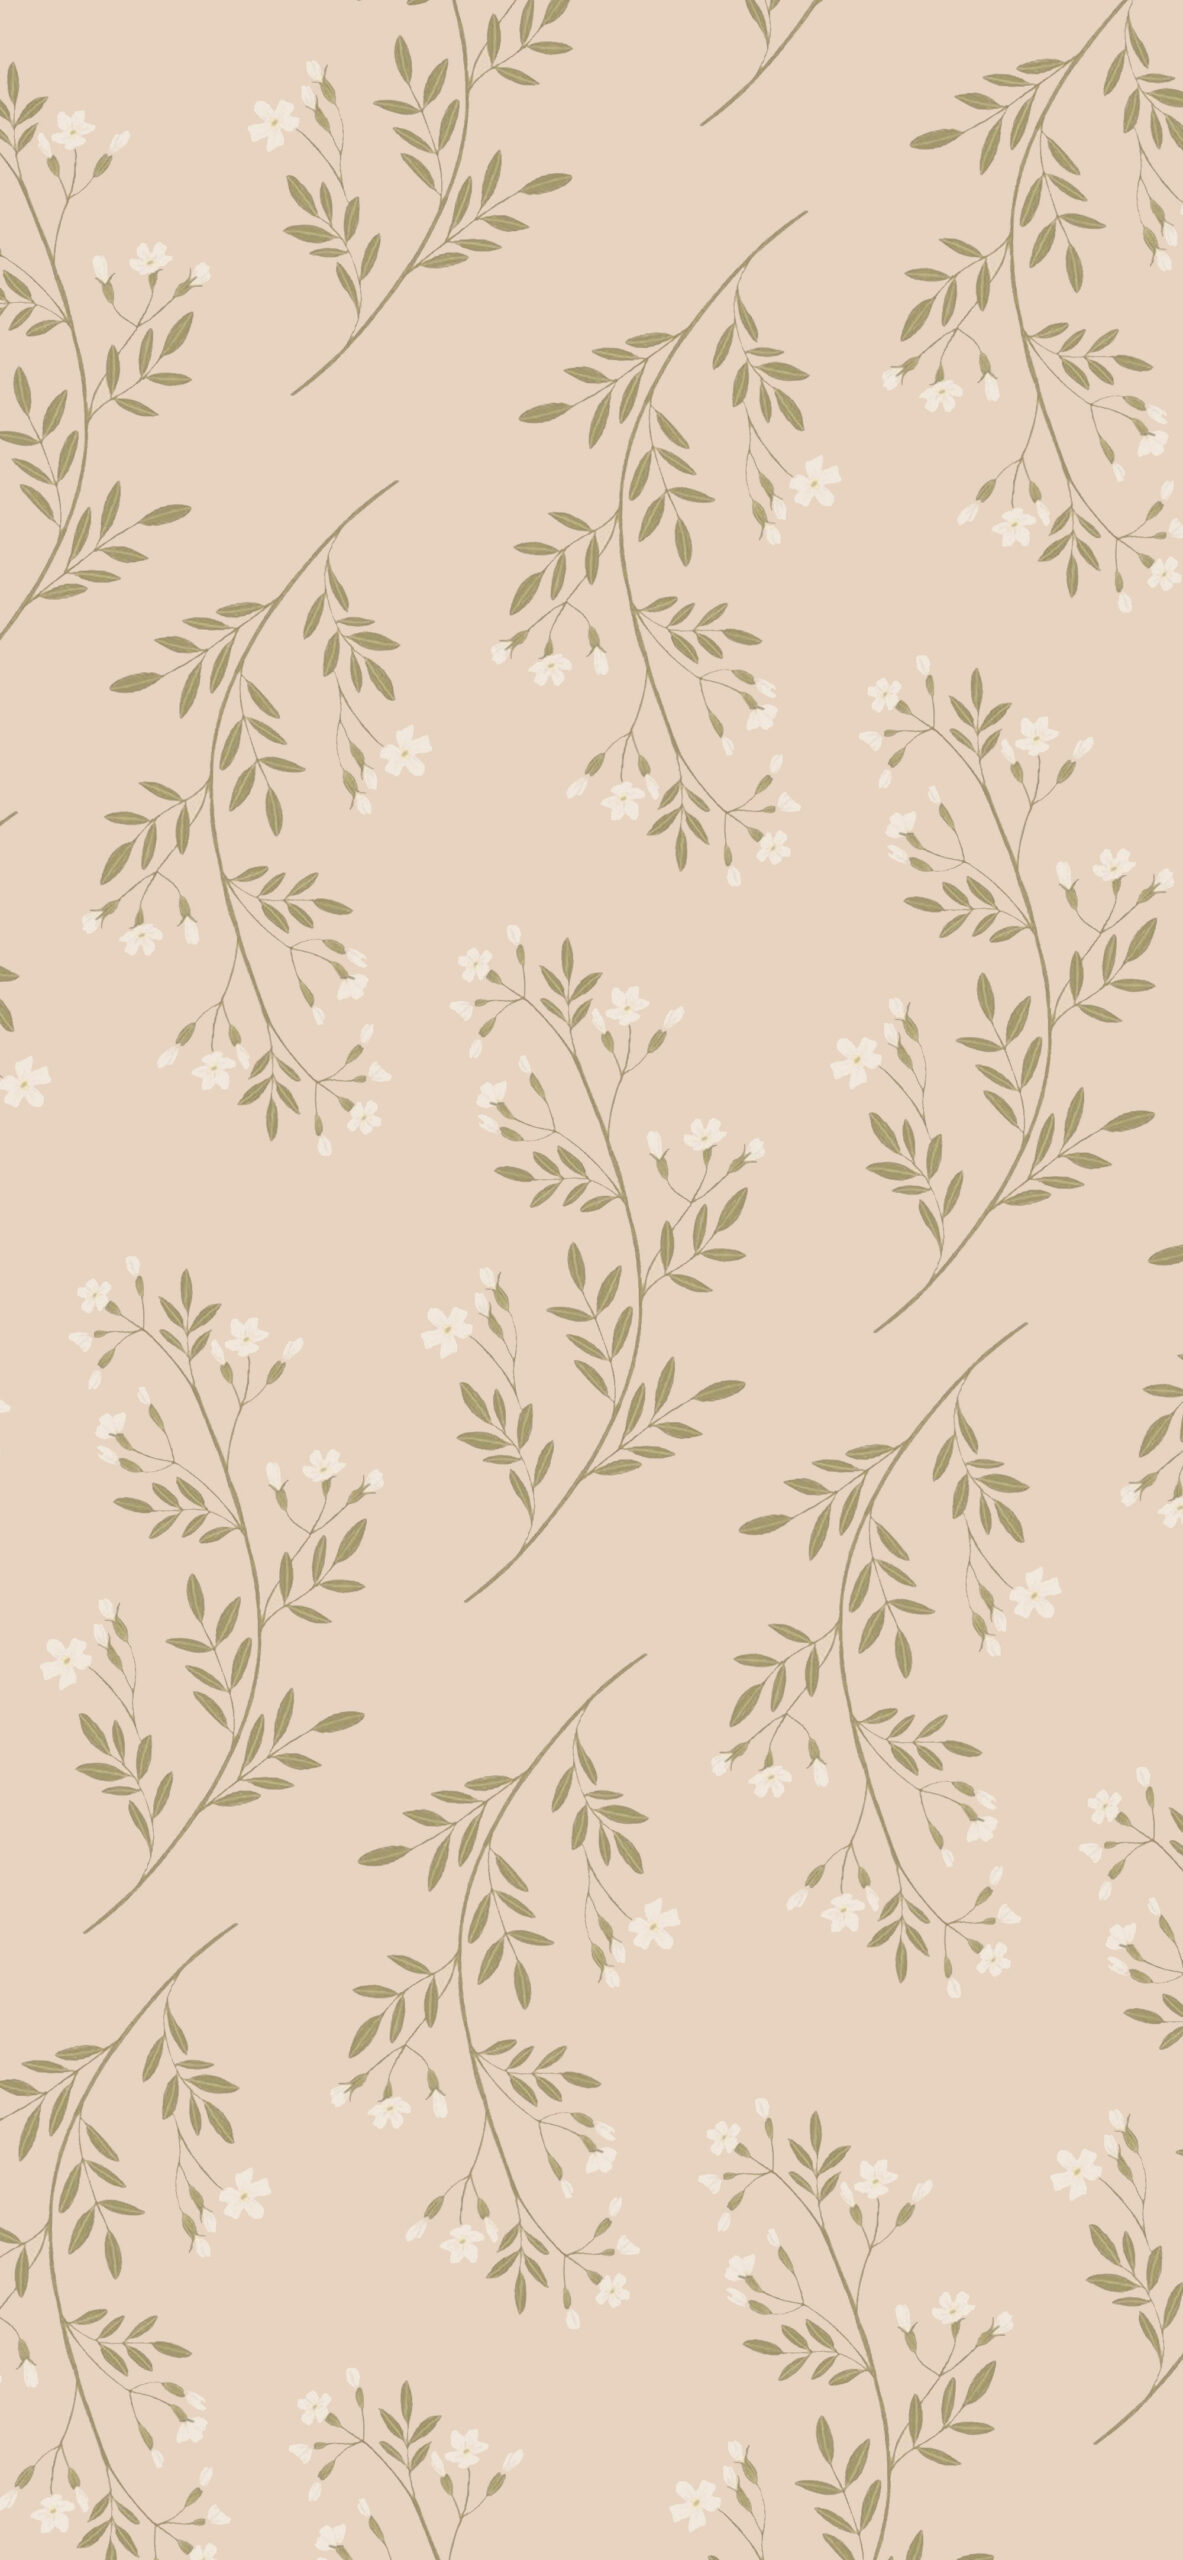 jasmine blossoms beige background